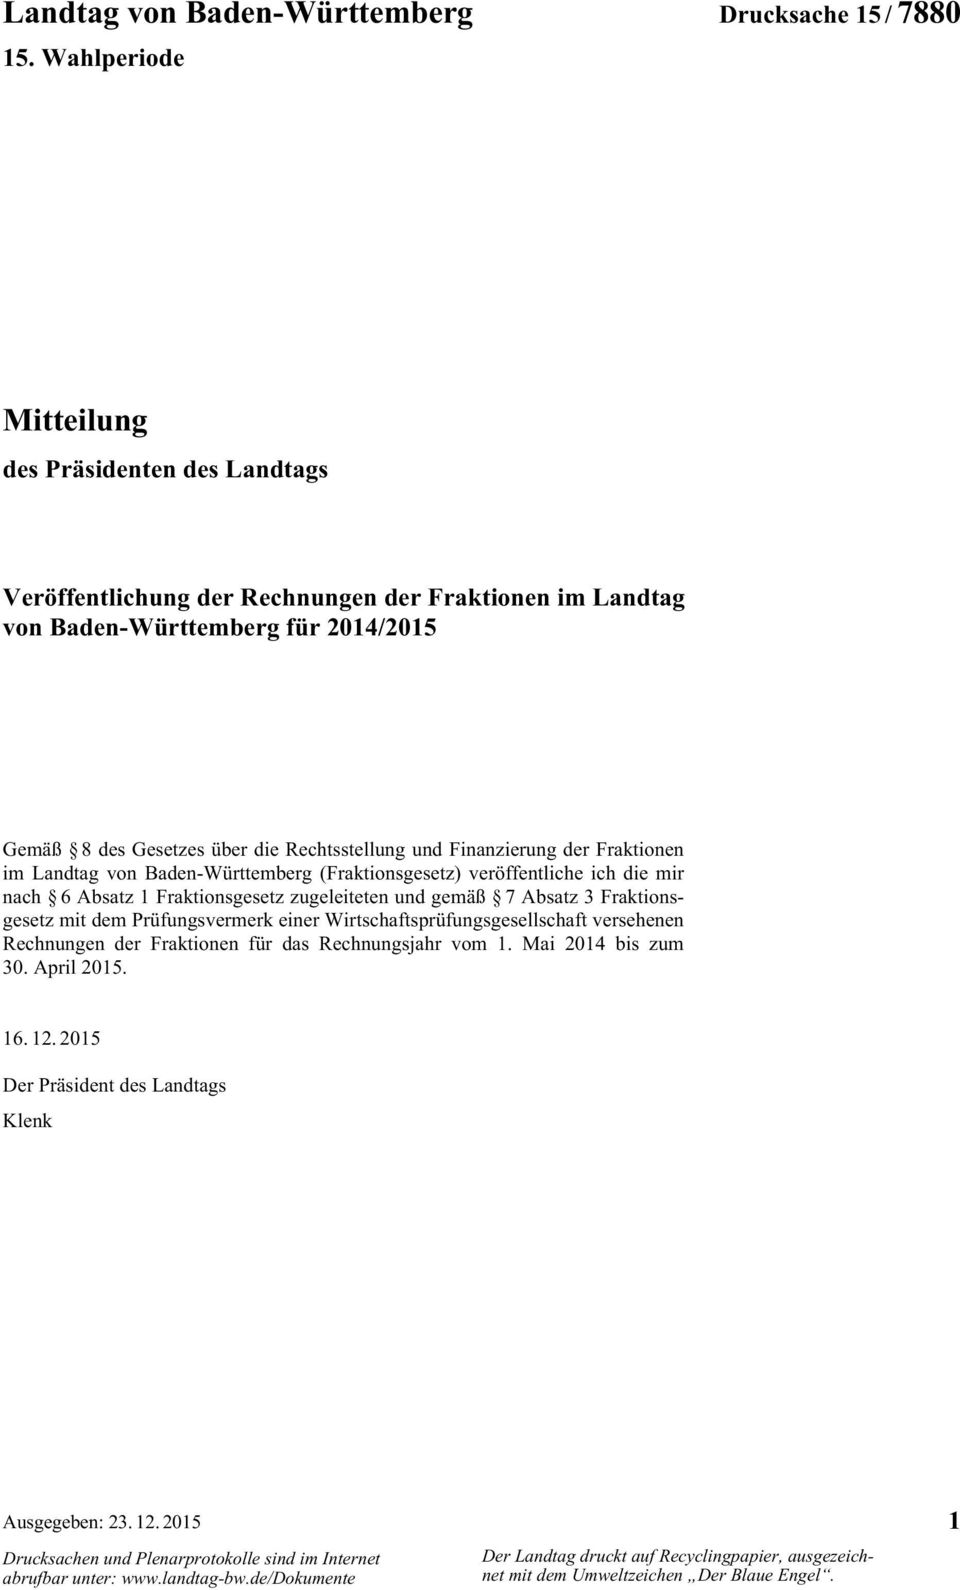 Rechtsstellung und Finanzierung der Fraktionen im Landtag von Baden-Württemberg (Fraktionsgesetz) veröffentliche ich die mir nach 6 Absatz 1 Fraktionsgesetz zugeleiteten und gemäß 7 Absatz 3